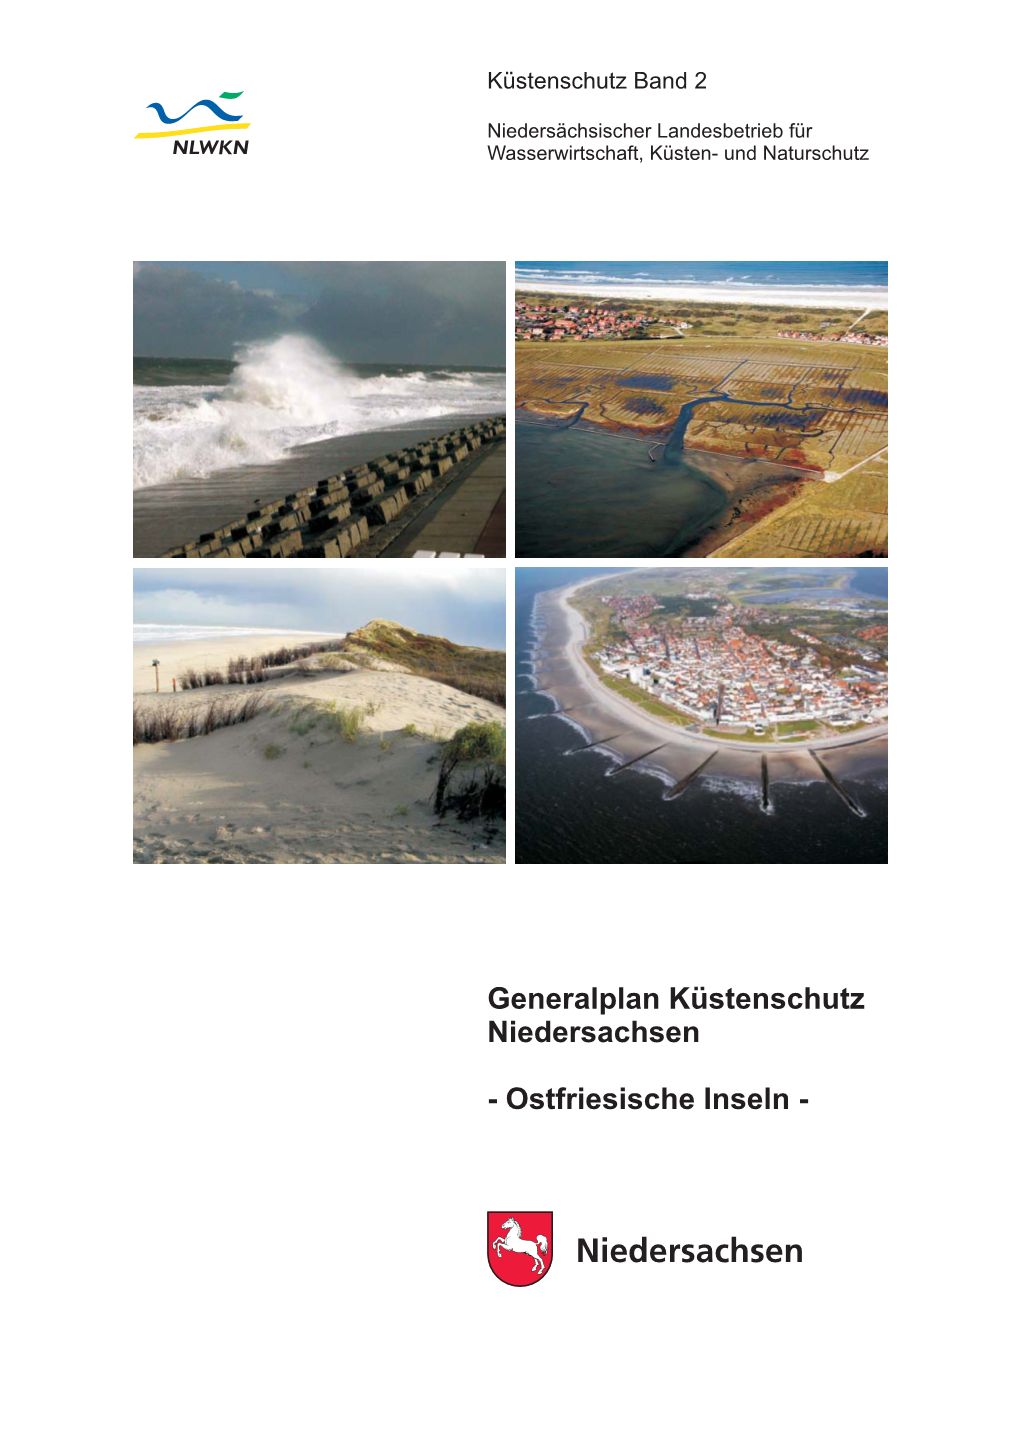 Generalplan Küstenschutz Ostfriesische Inseln